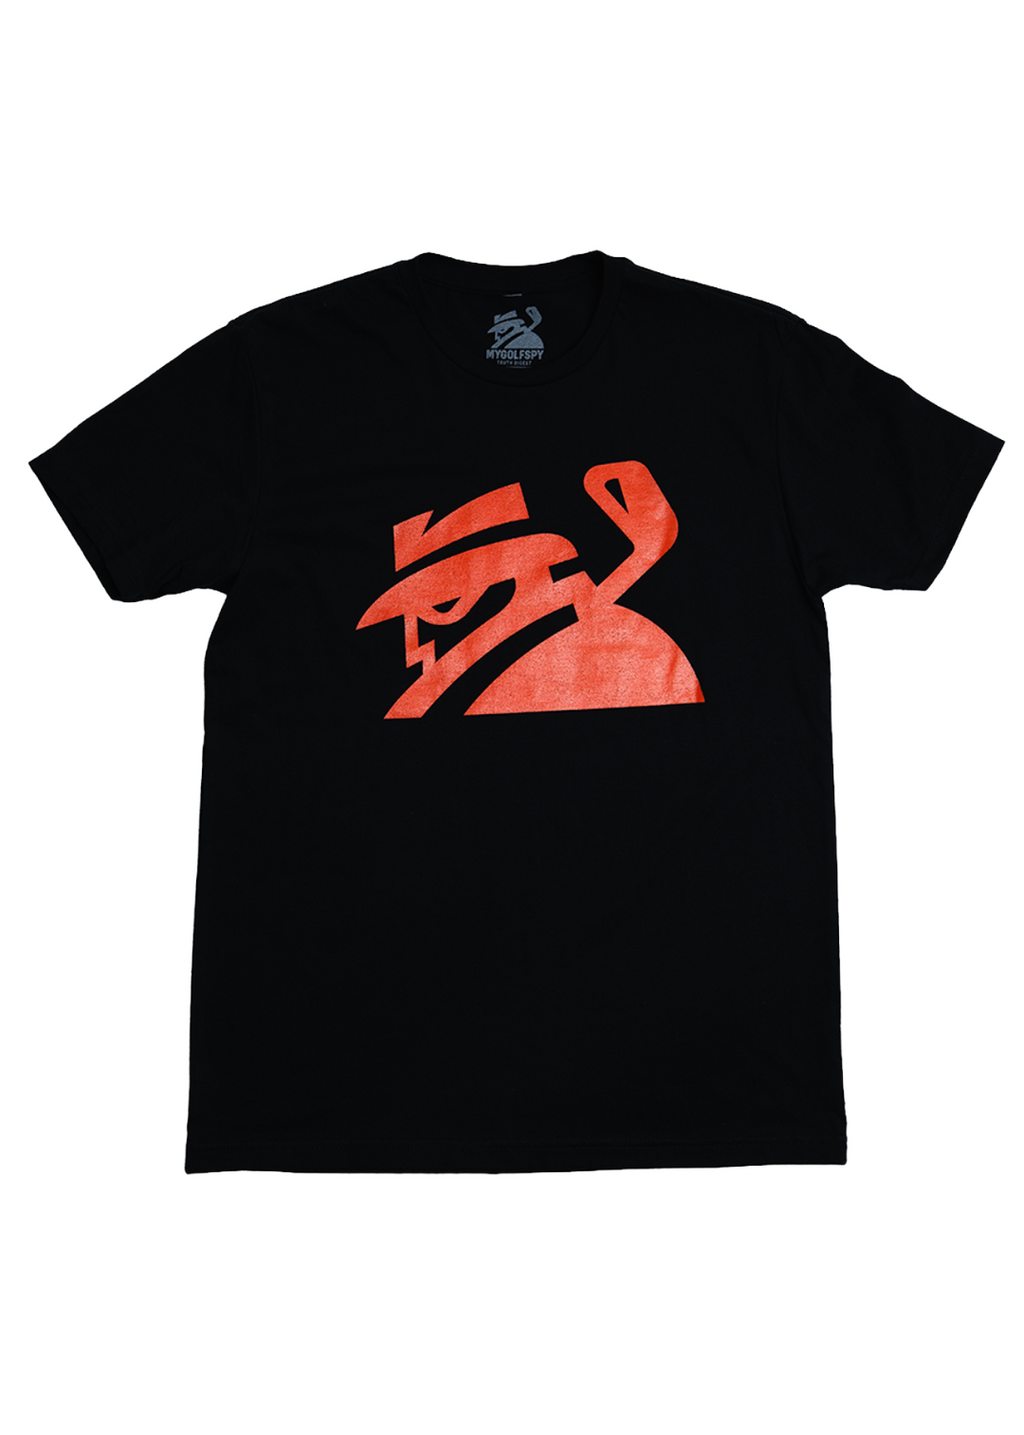 2022间谍t恤-黑色/红色